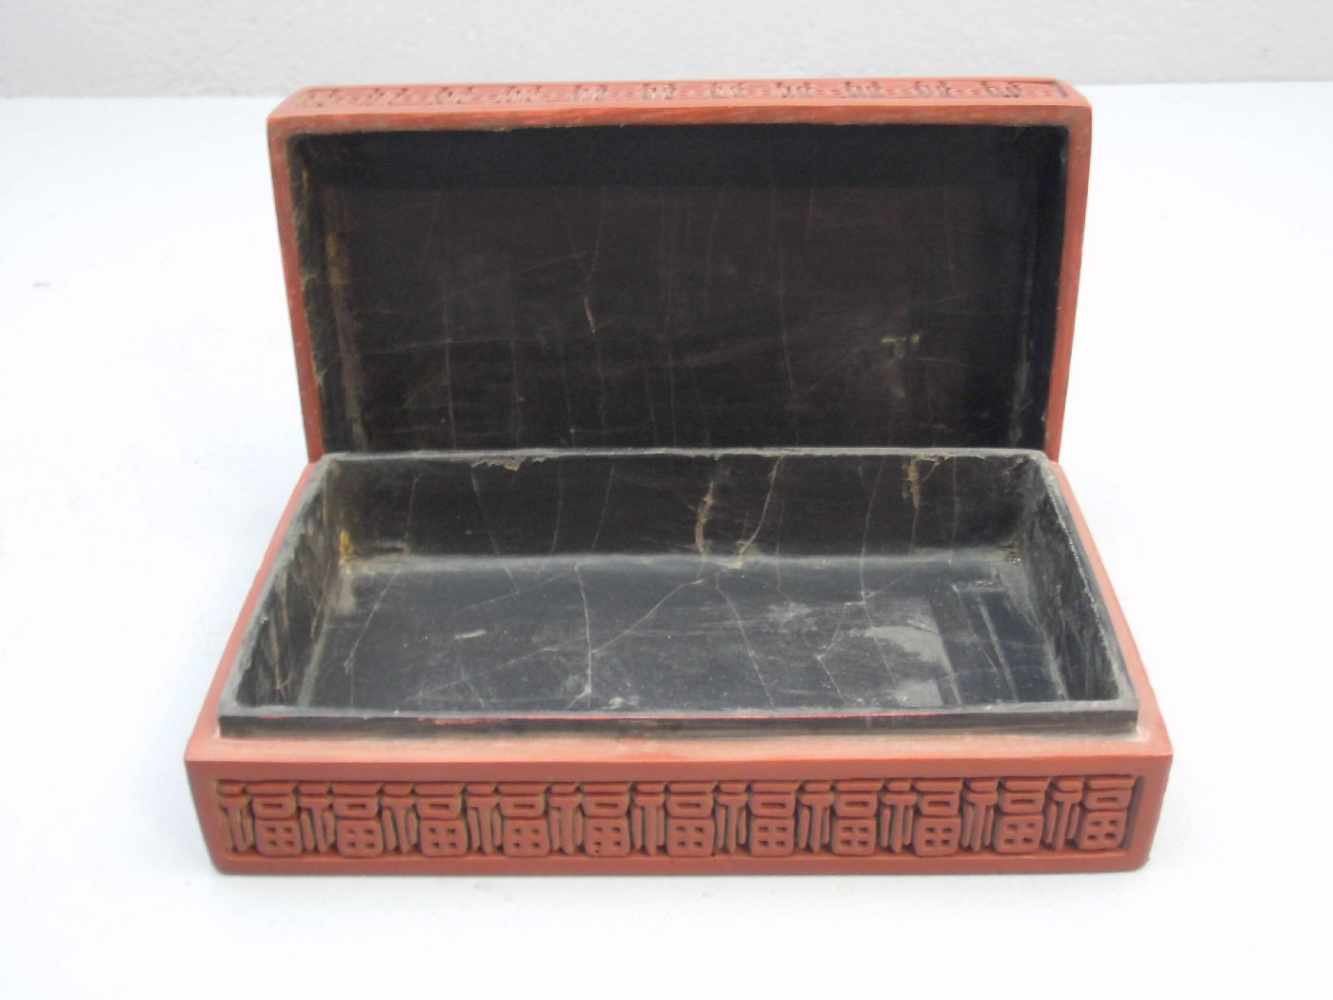 LACKSCHATULLE / DECKELDOSE / lacquer box, China, rot und schwarz staffierte Lackarbeit. - Image 2 of 3